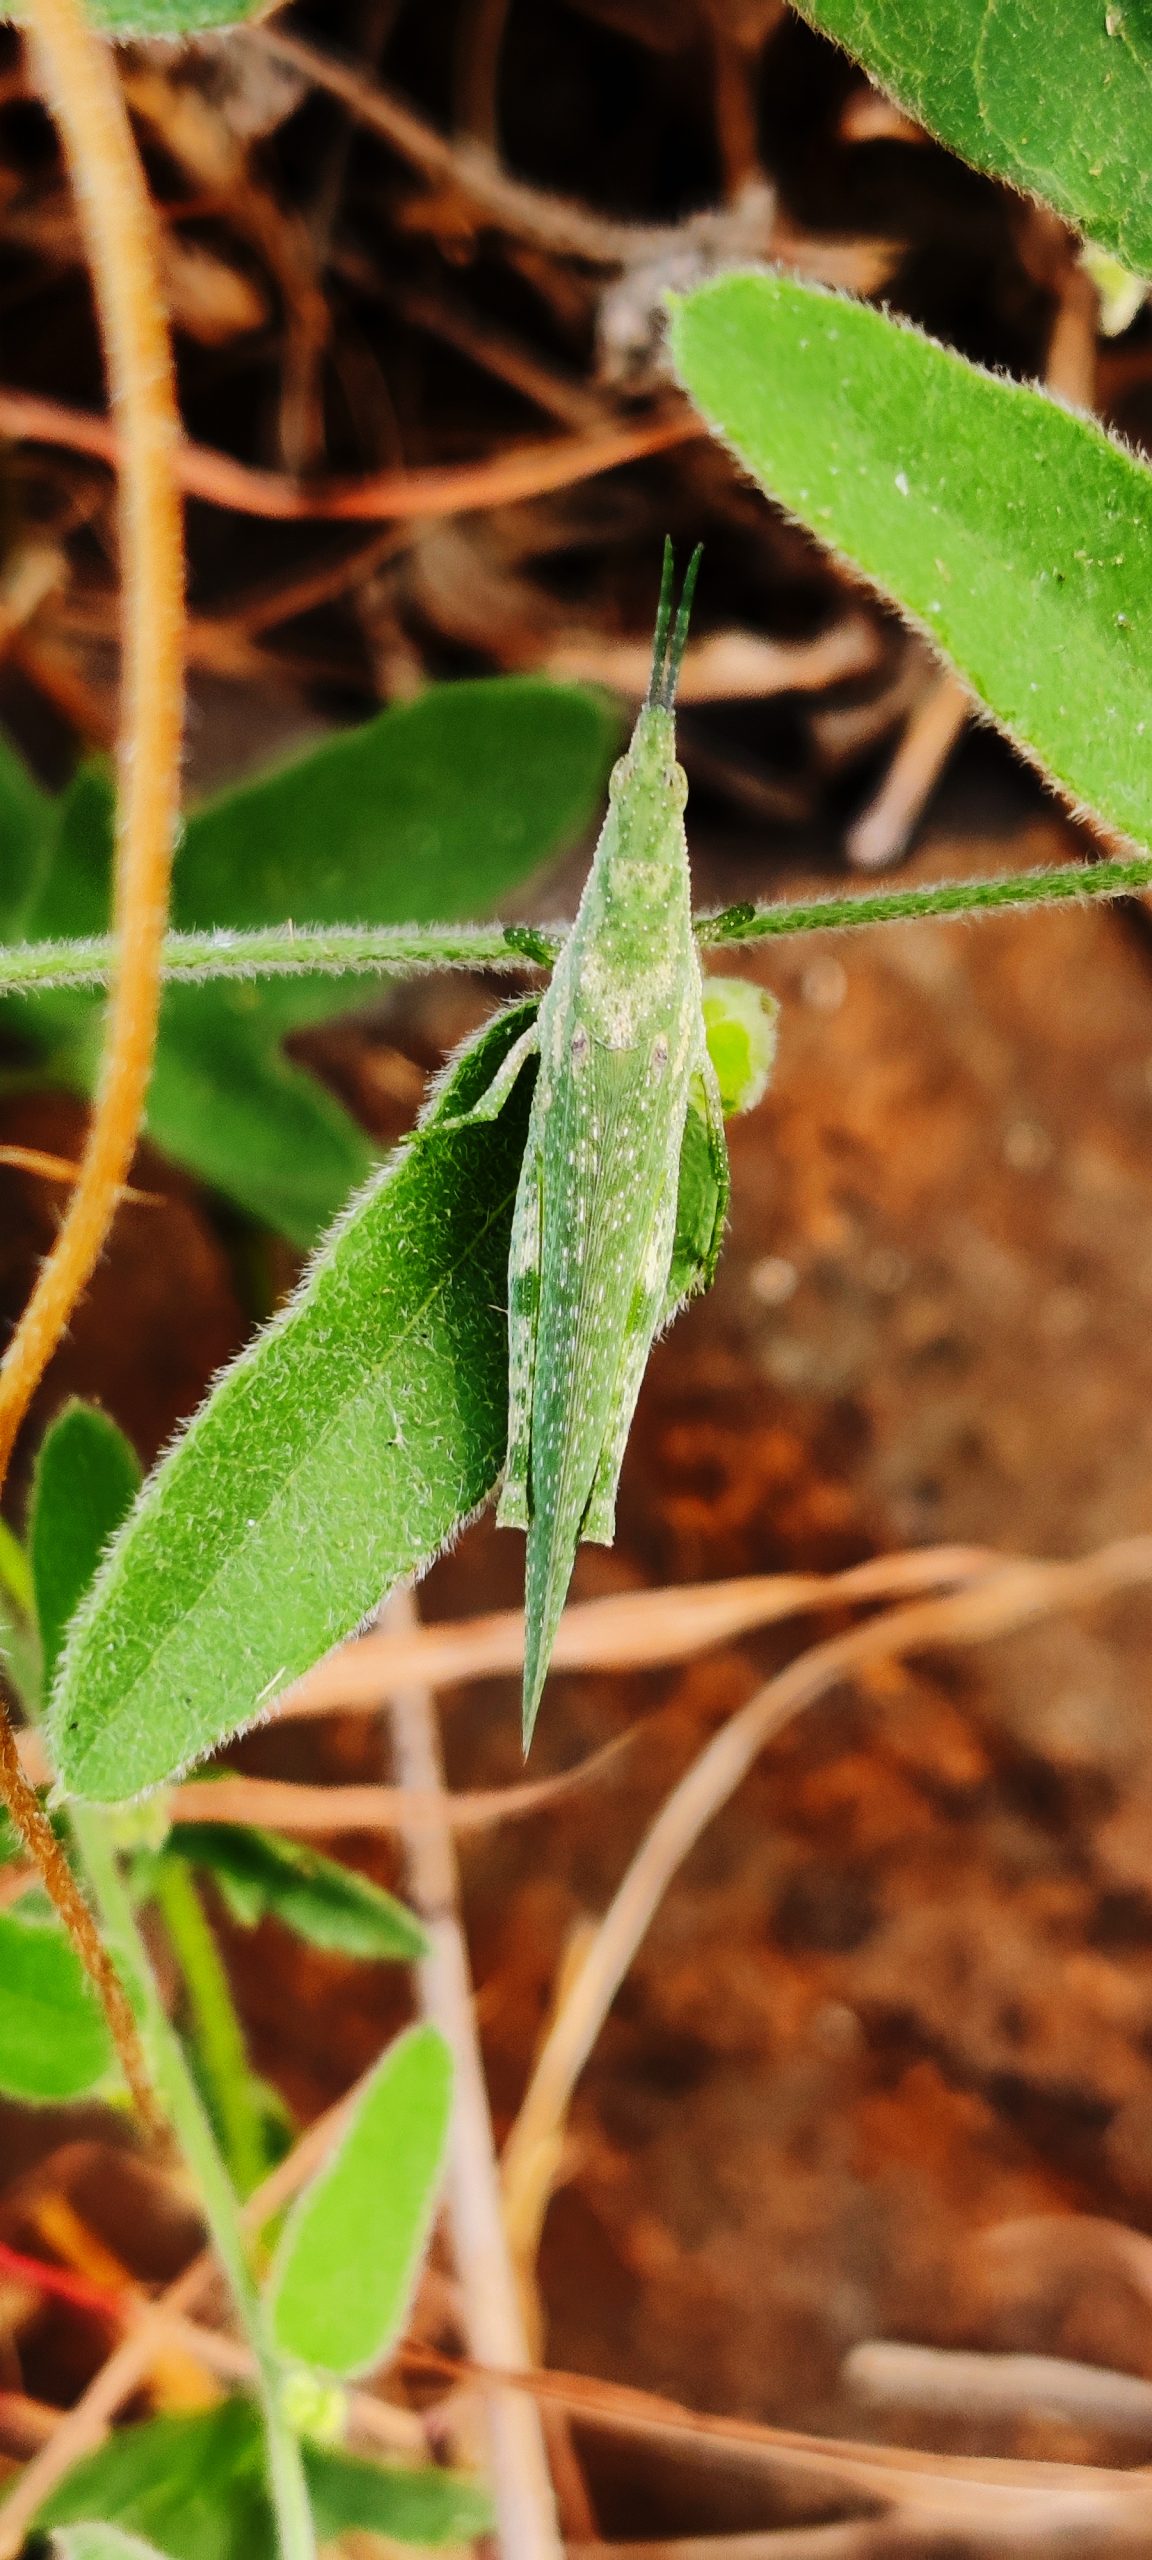 A green grasshopper